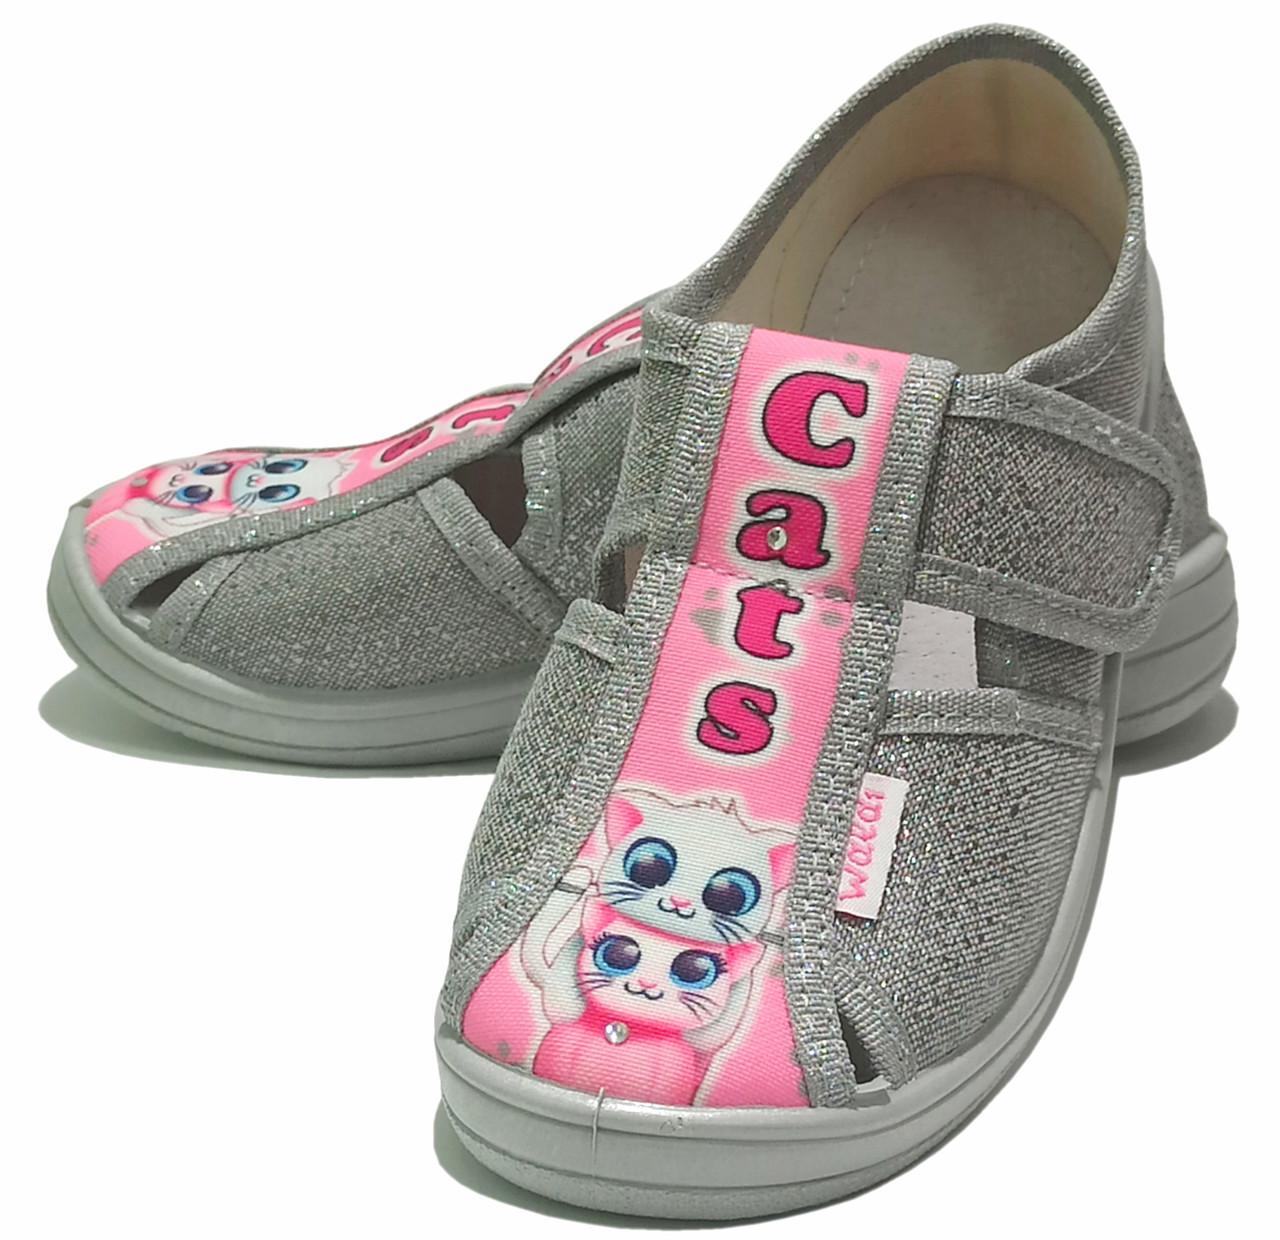 Дитячі тапочки для дівчинки текстильні Валди Waldi Маша Cats сіро-рожеві. розміри 24-27